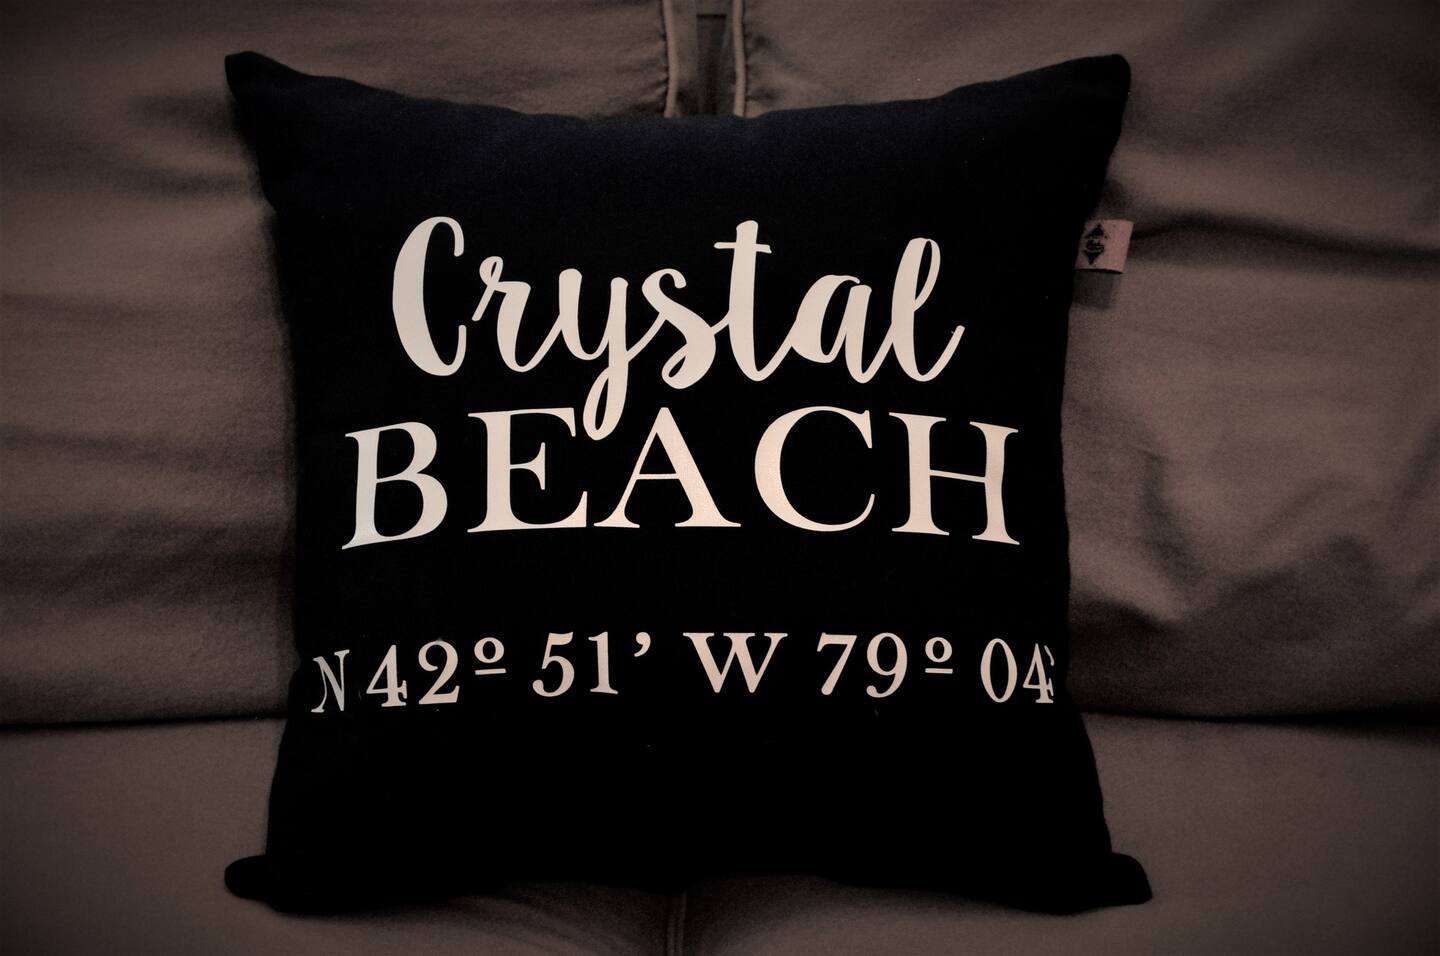 Crystal Beach